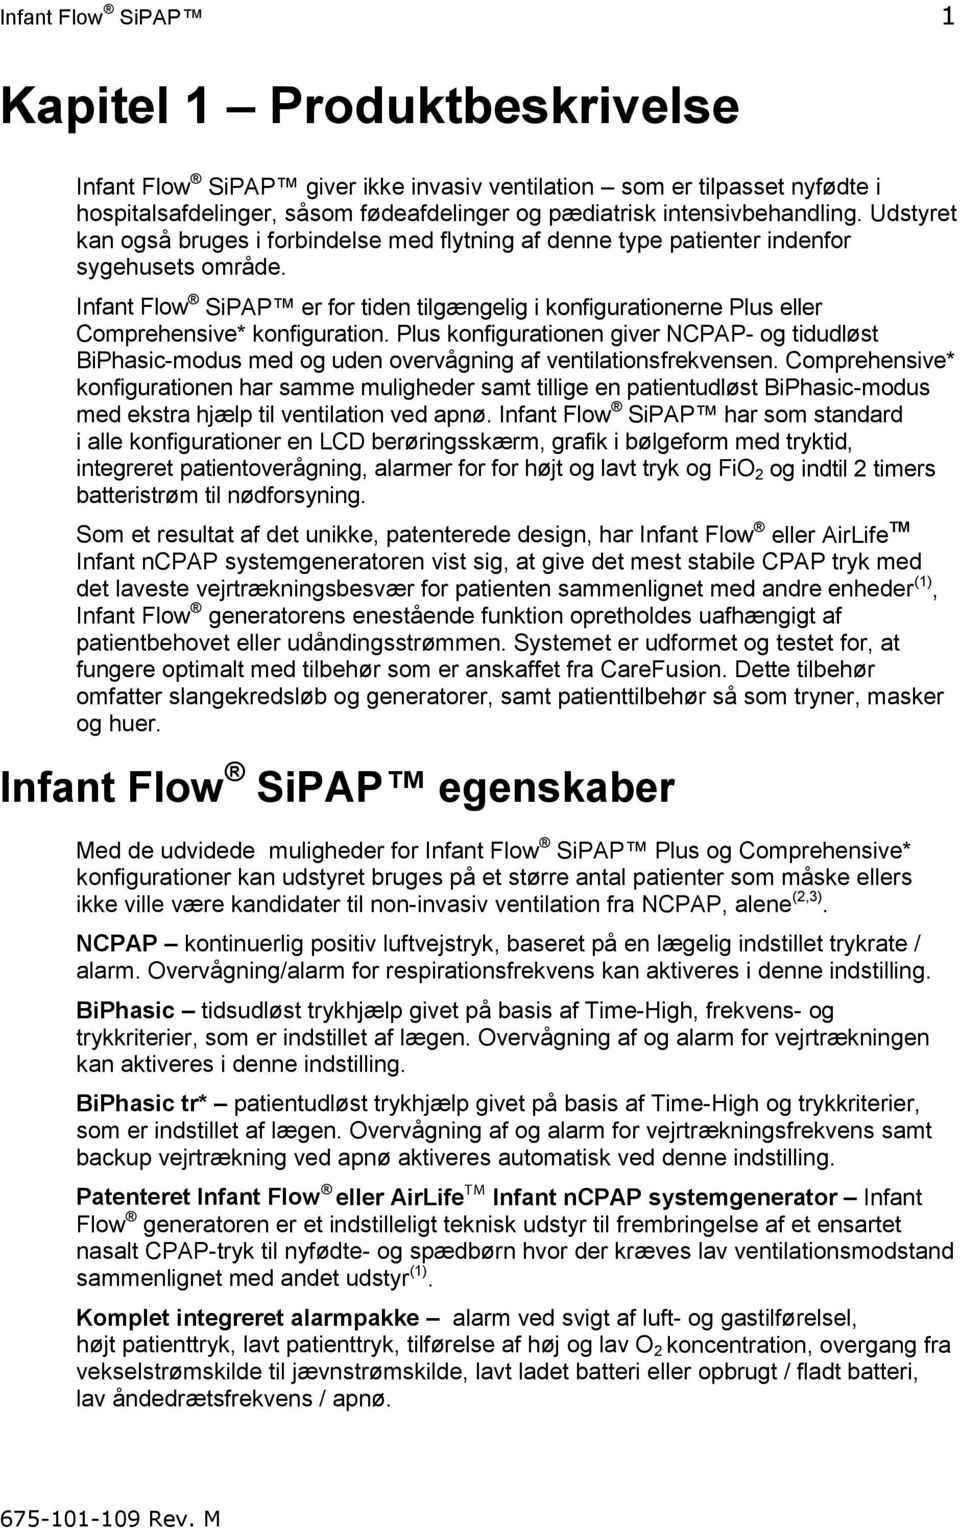 Infant Flow SiPAP er for tiden tilgængelig i konfigurationerne Plus eller Comprehensive* konfiguration.